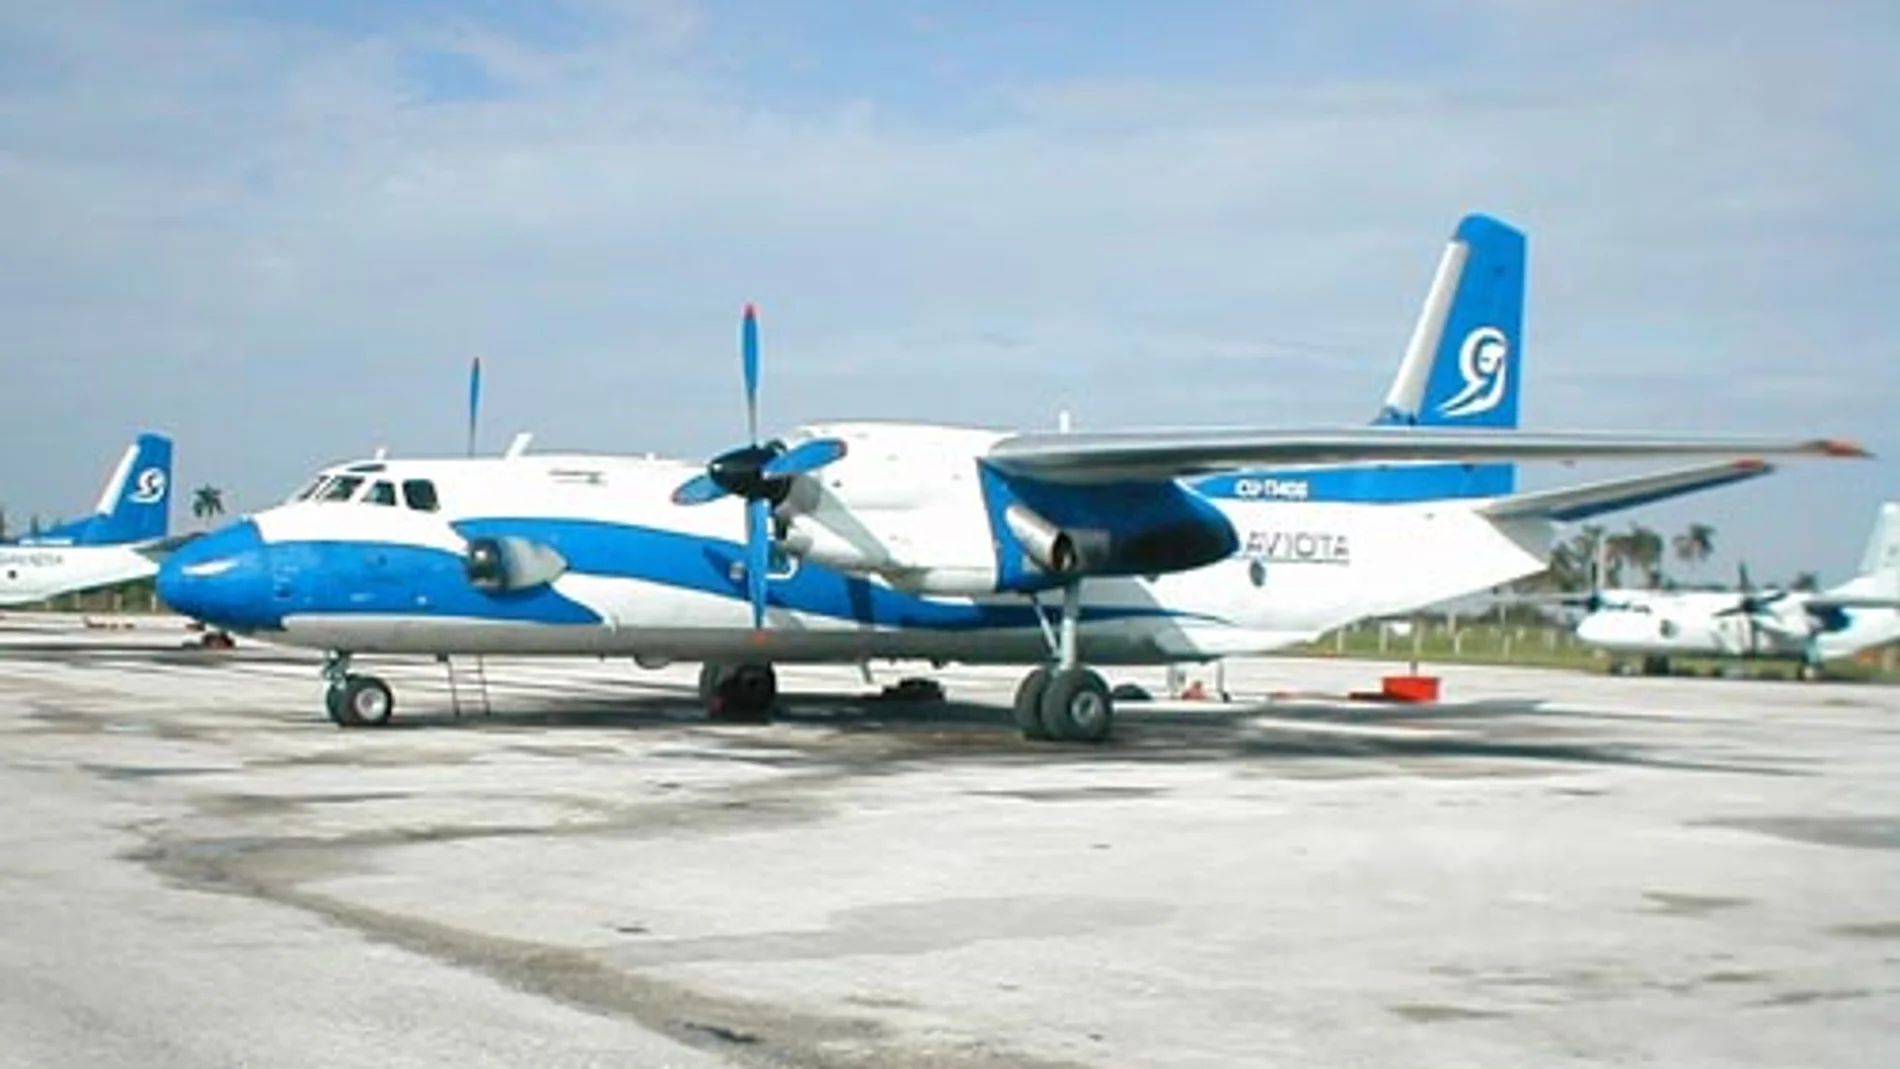 El avión de Aerogavieta siniestrado sería un An-26